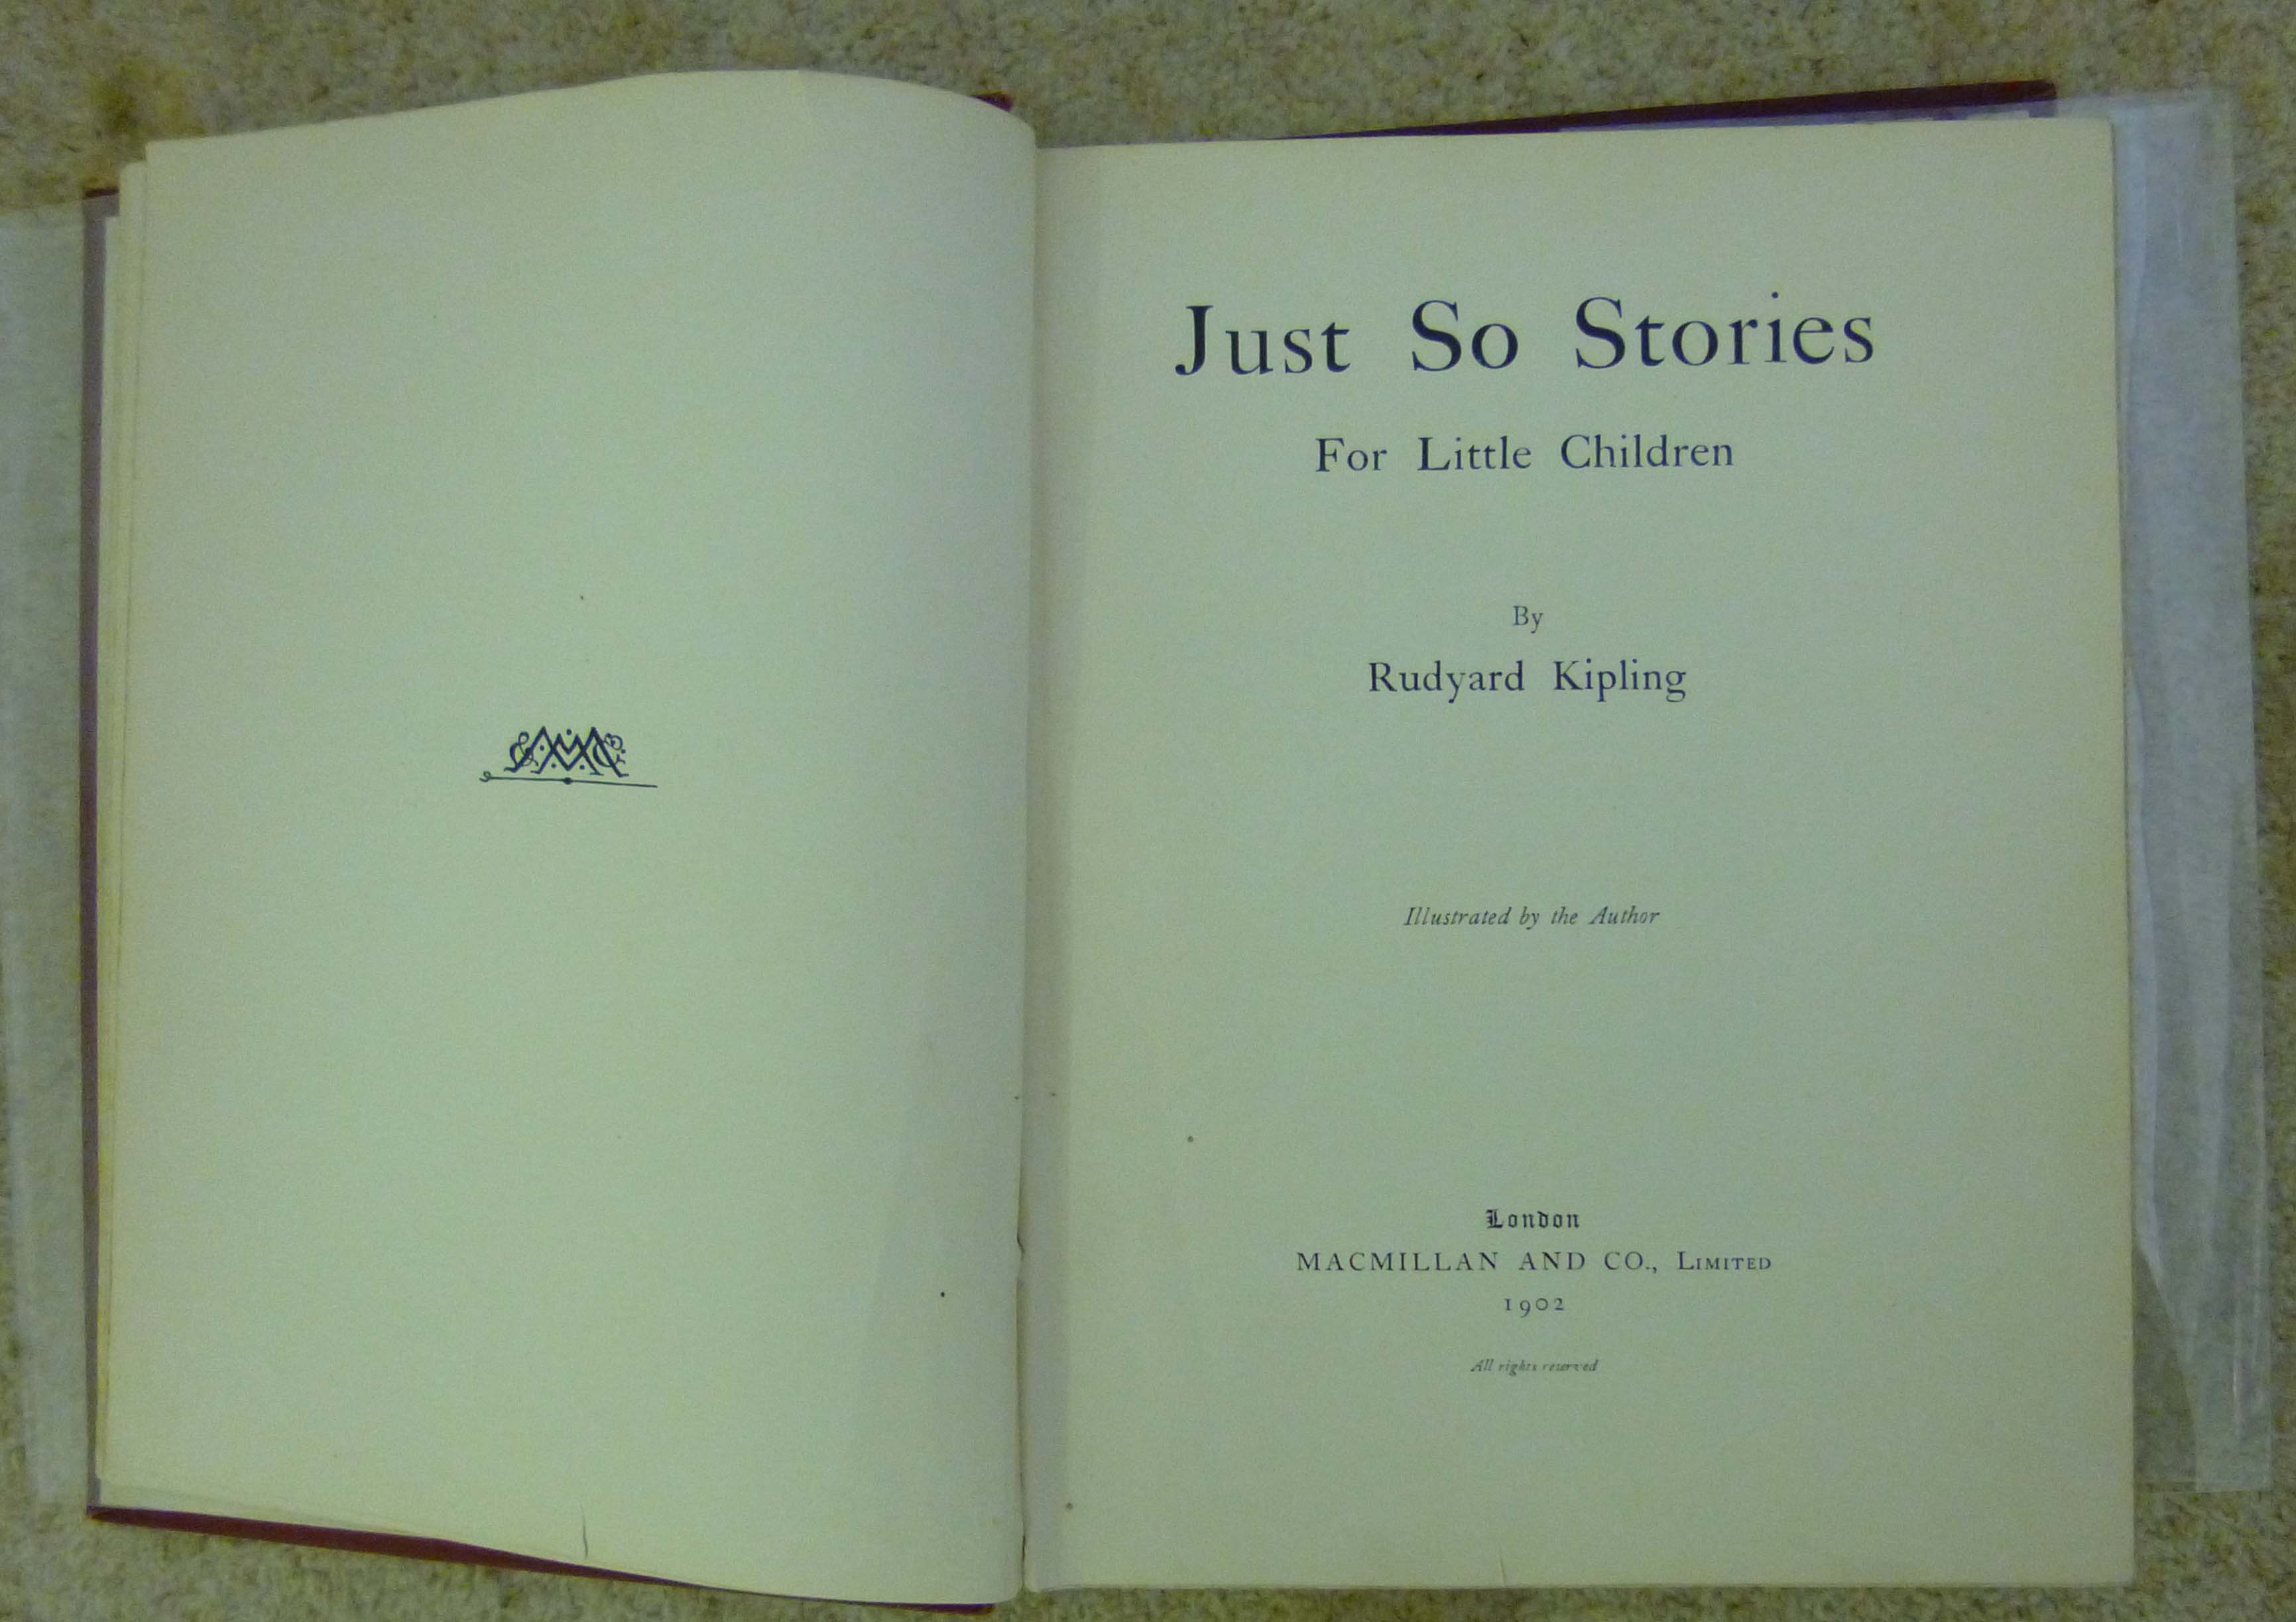 Kipling (Rudyard) - Just So Stories for Little Children, illustrated by Rudyard Kipling, published